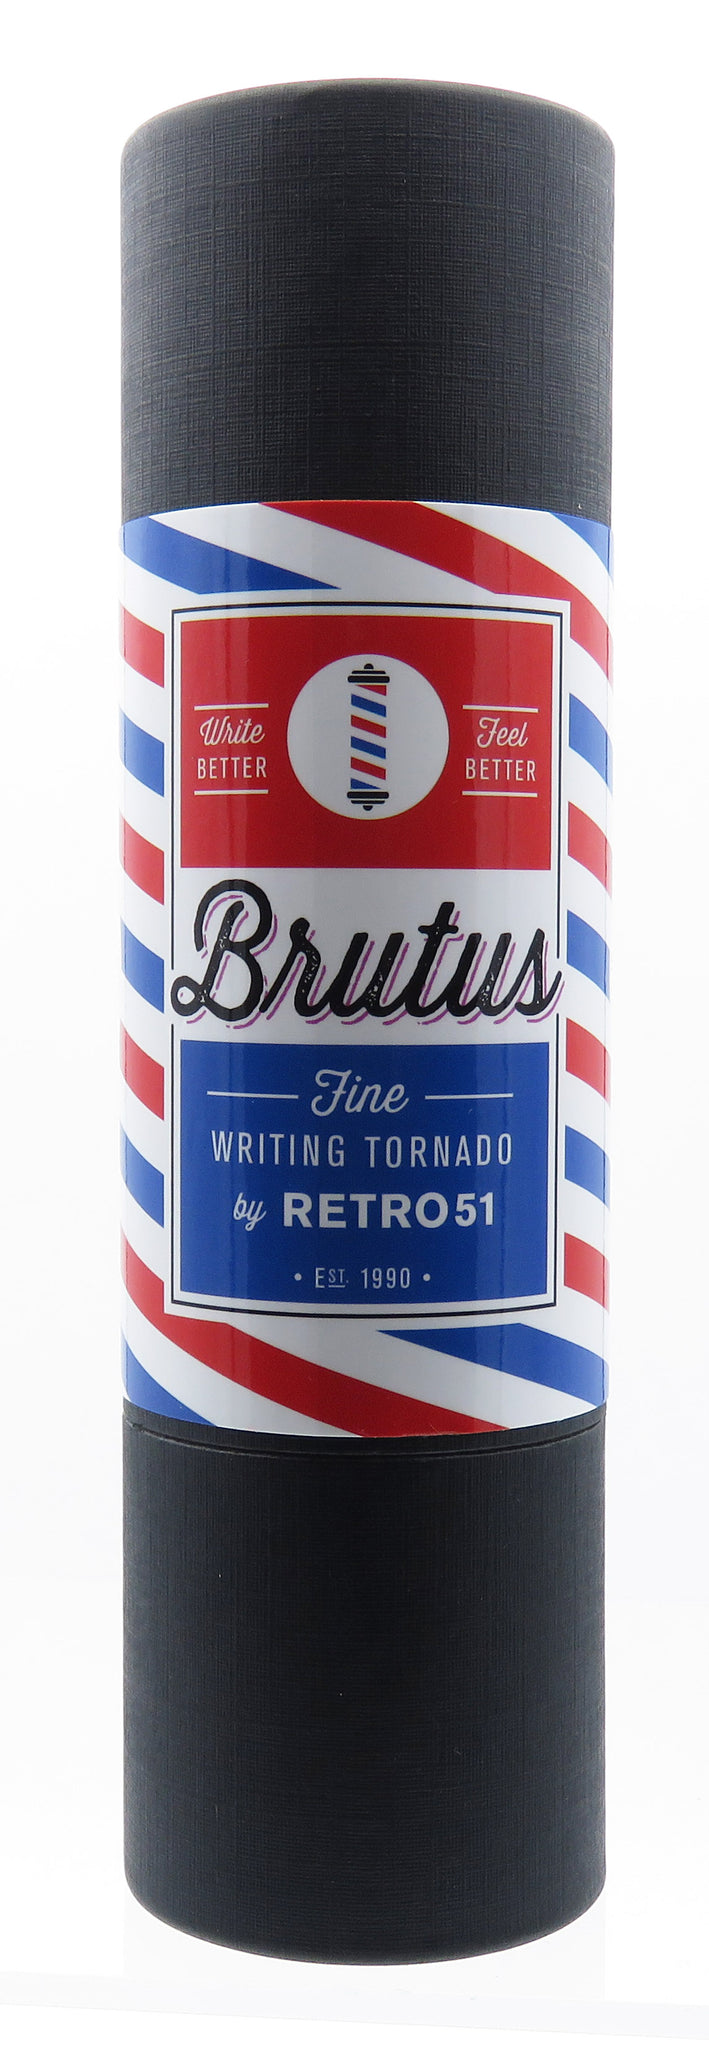 Retro '51 Brutus Vintage Metalsmith